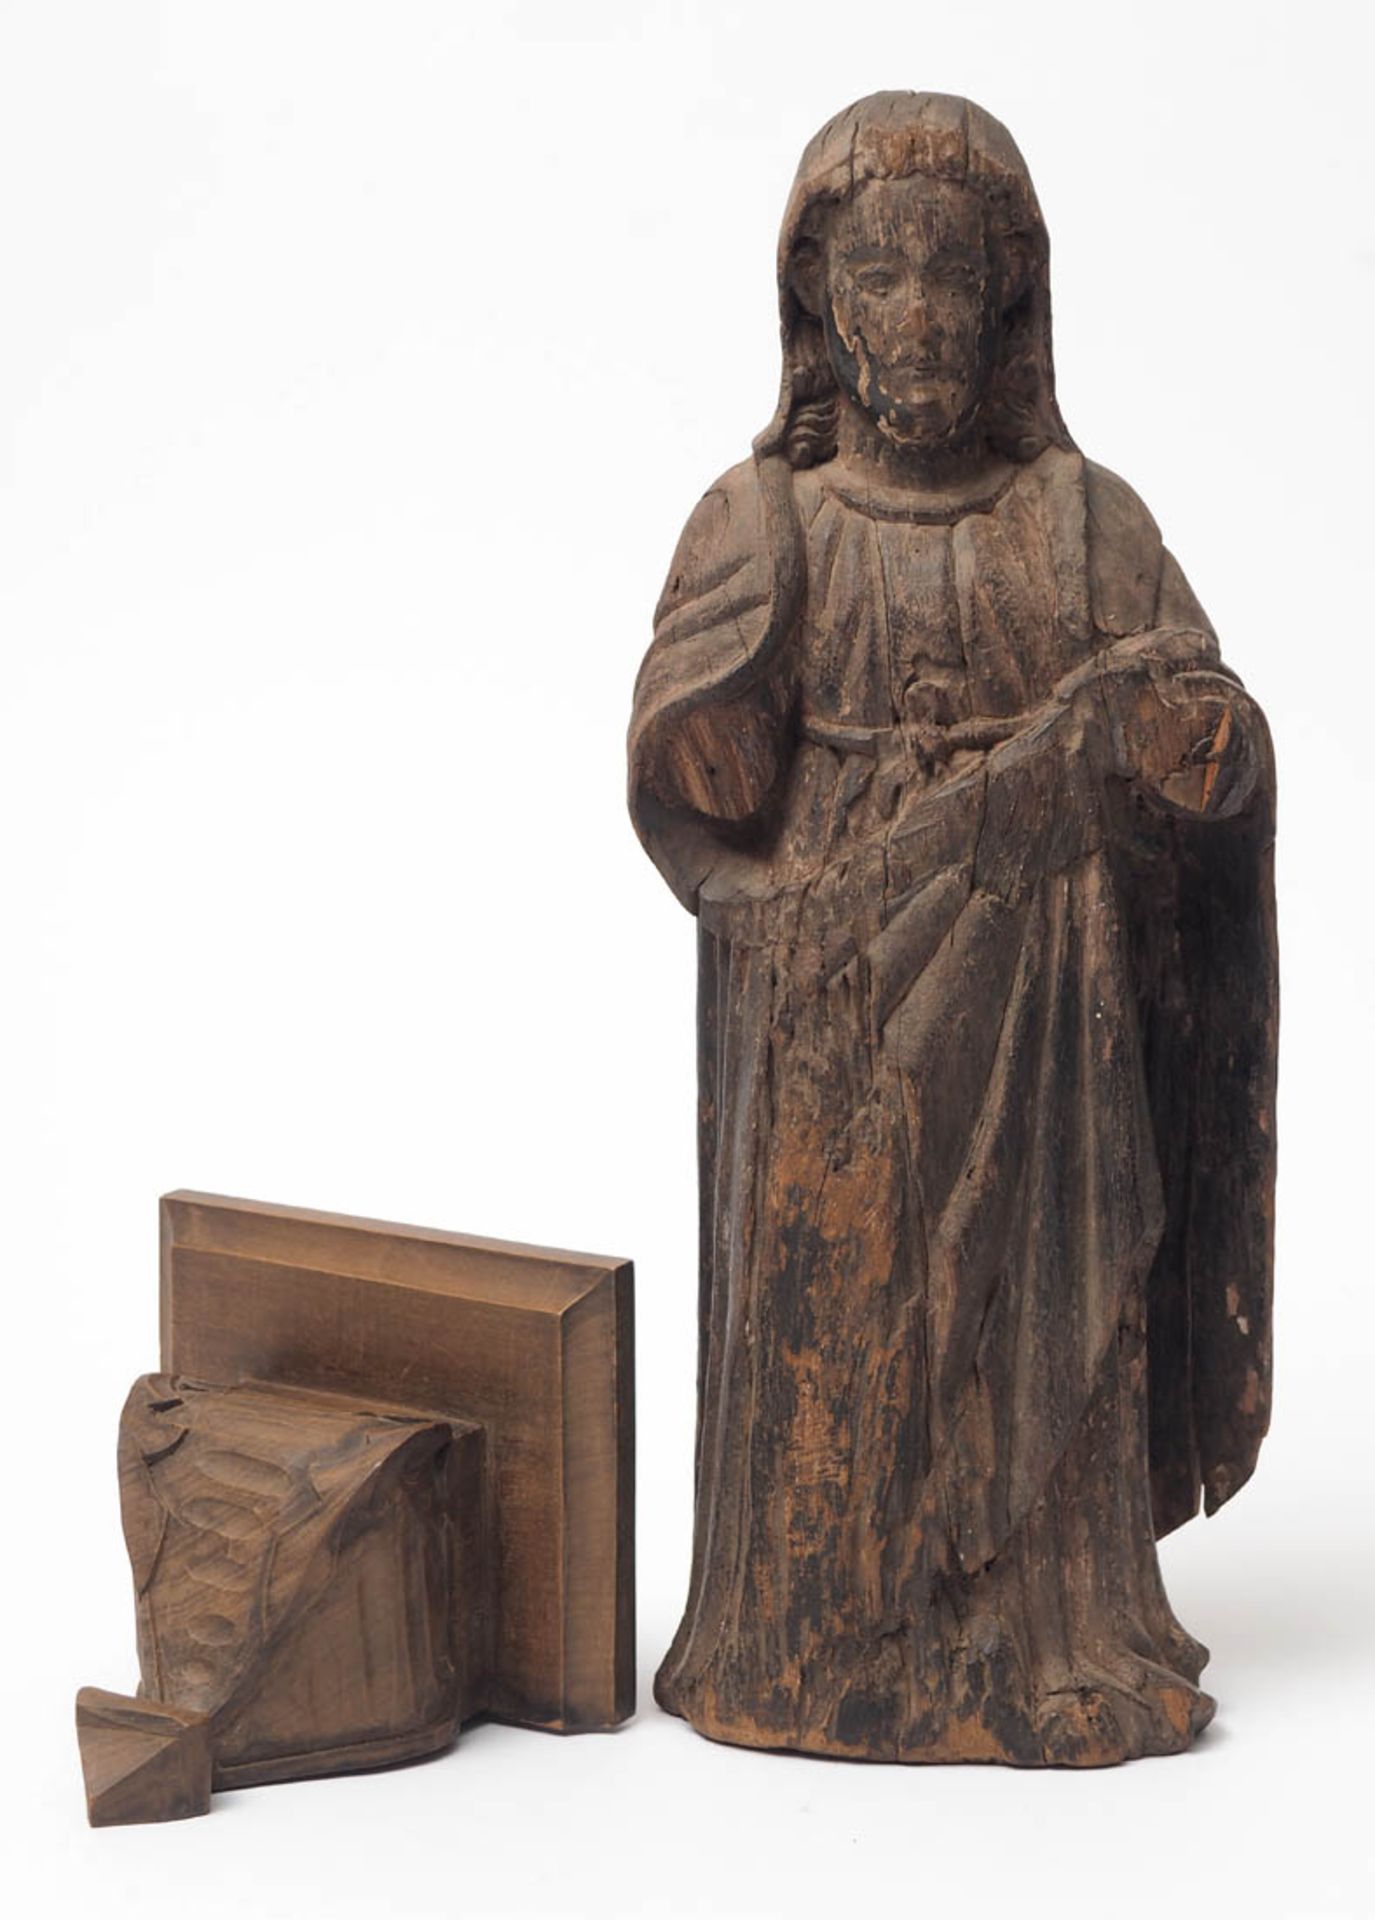 Heiligenfigur, 17.Jhdt. H.37,5cm. Lindenholz, dreiviertelsrund geschnitzt, mit Resten alter Fassung.